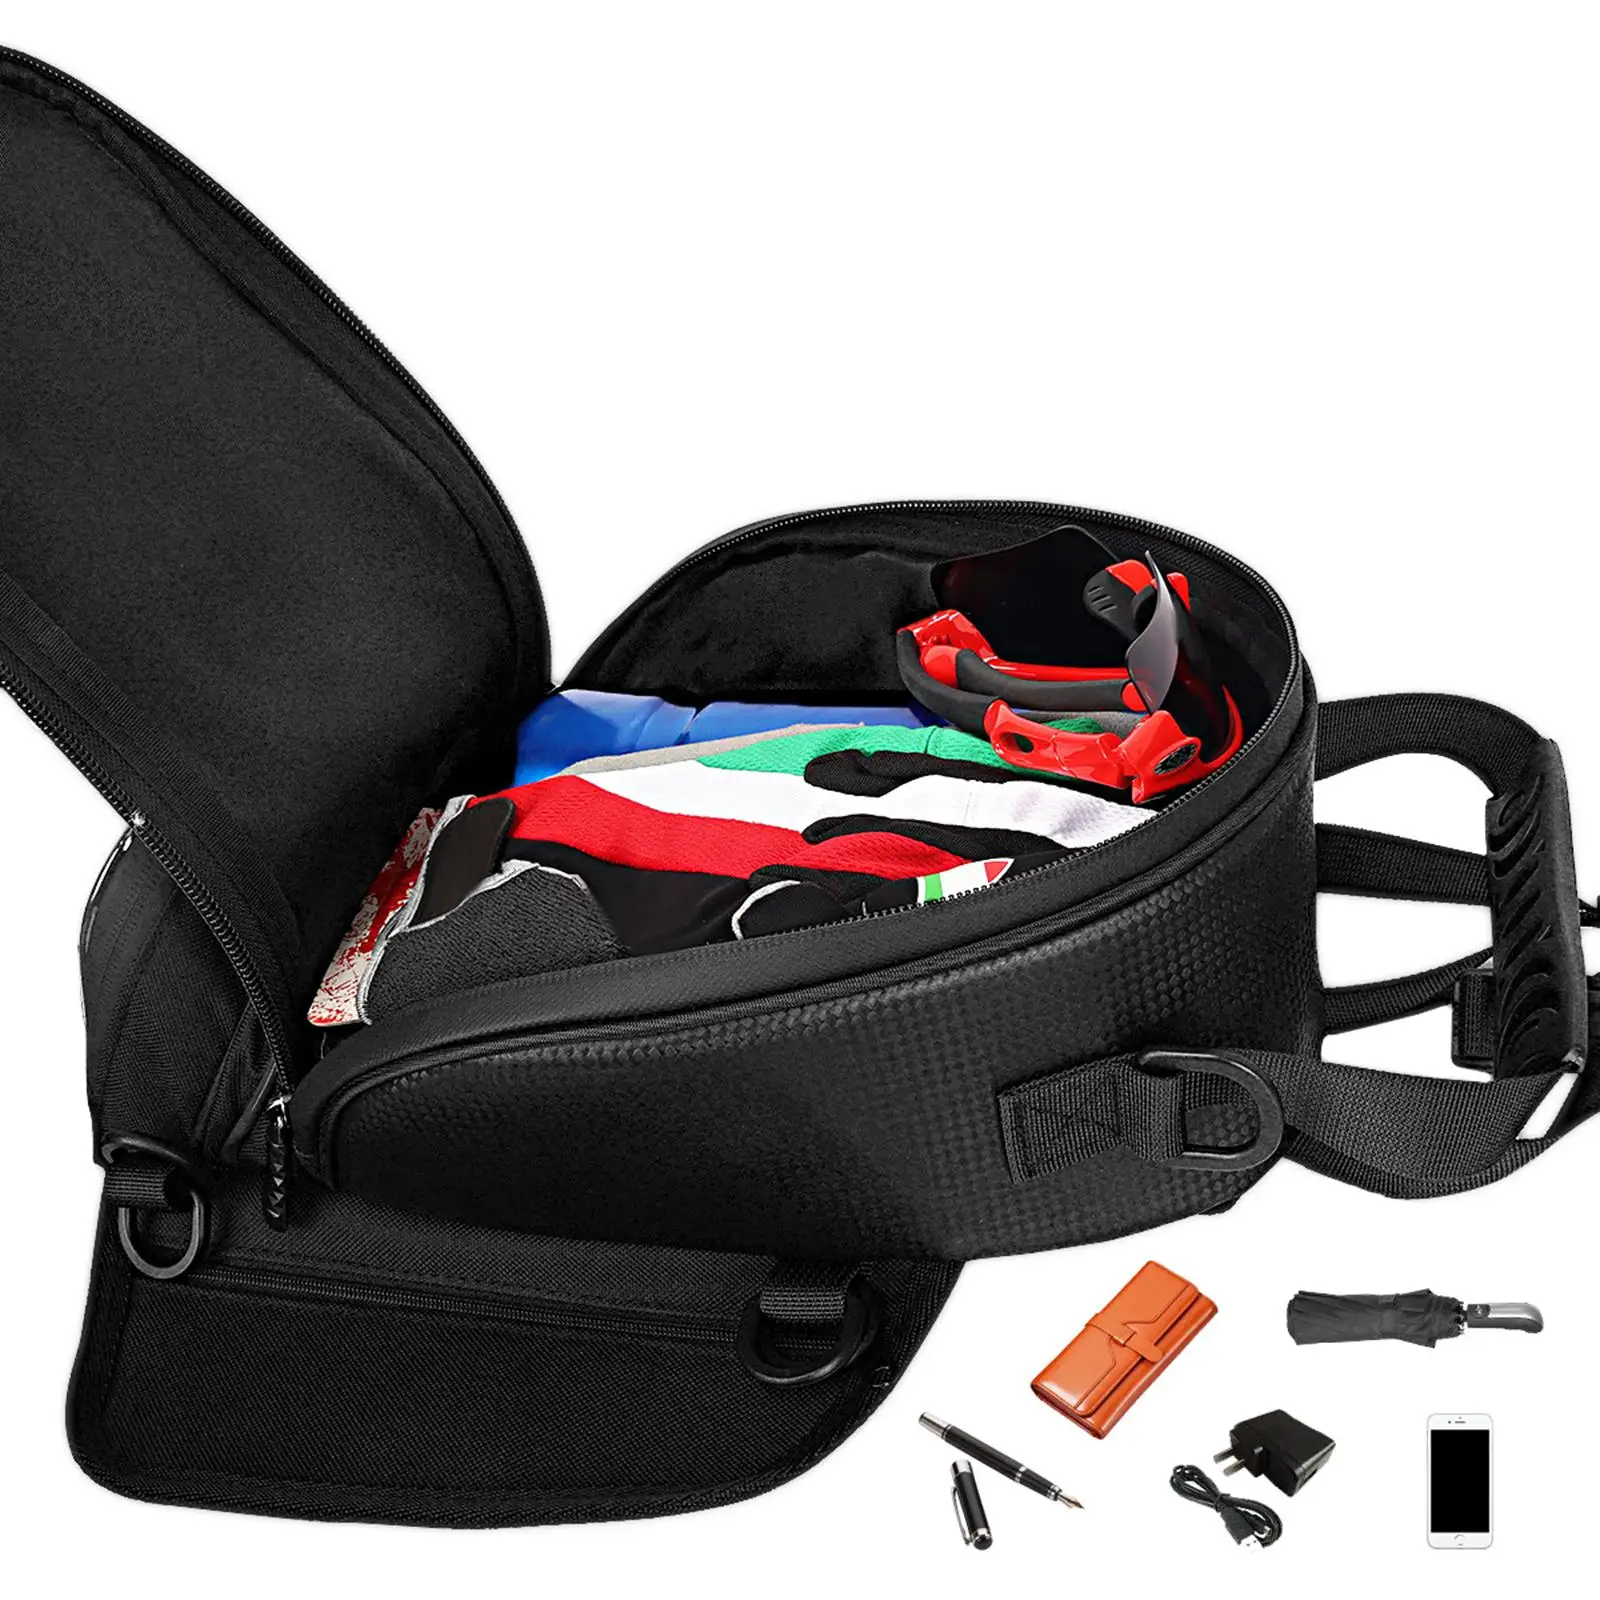 Motorcycle Phone Navigation Tank Storage Bag Waterproof Accessories wear Resistant Practical Durable Black Strap Mount